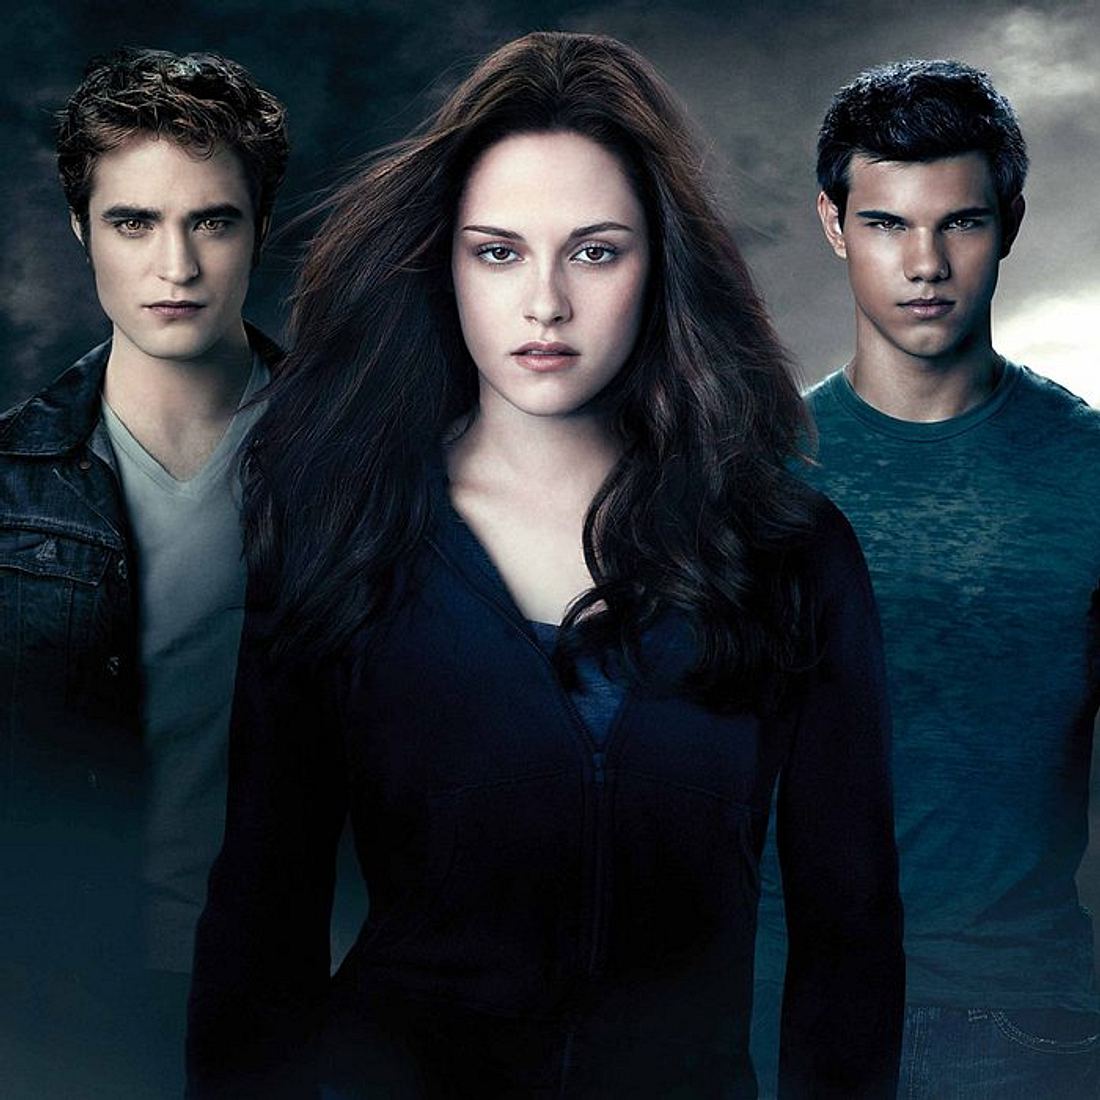 Twilight-Autorin Stephenie Meyer enthüllt, dass es neue Filme geben wird